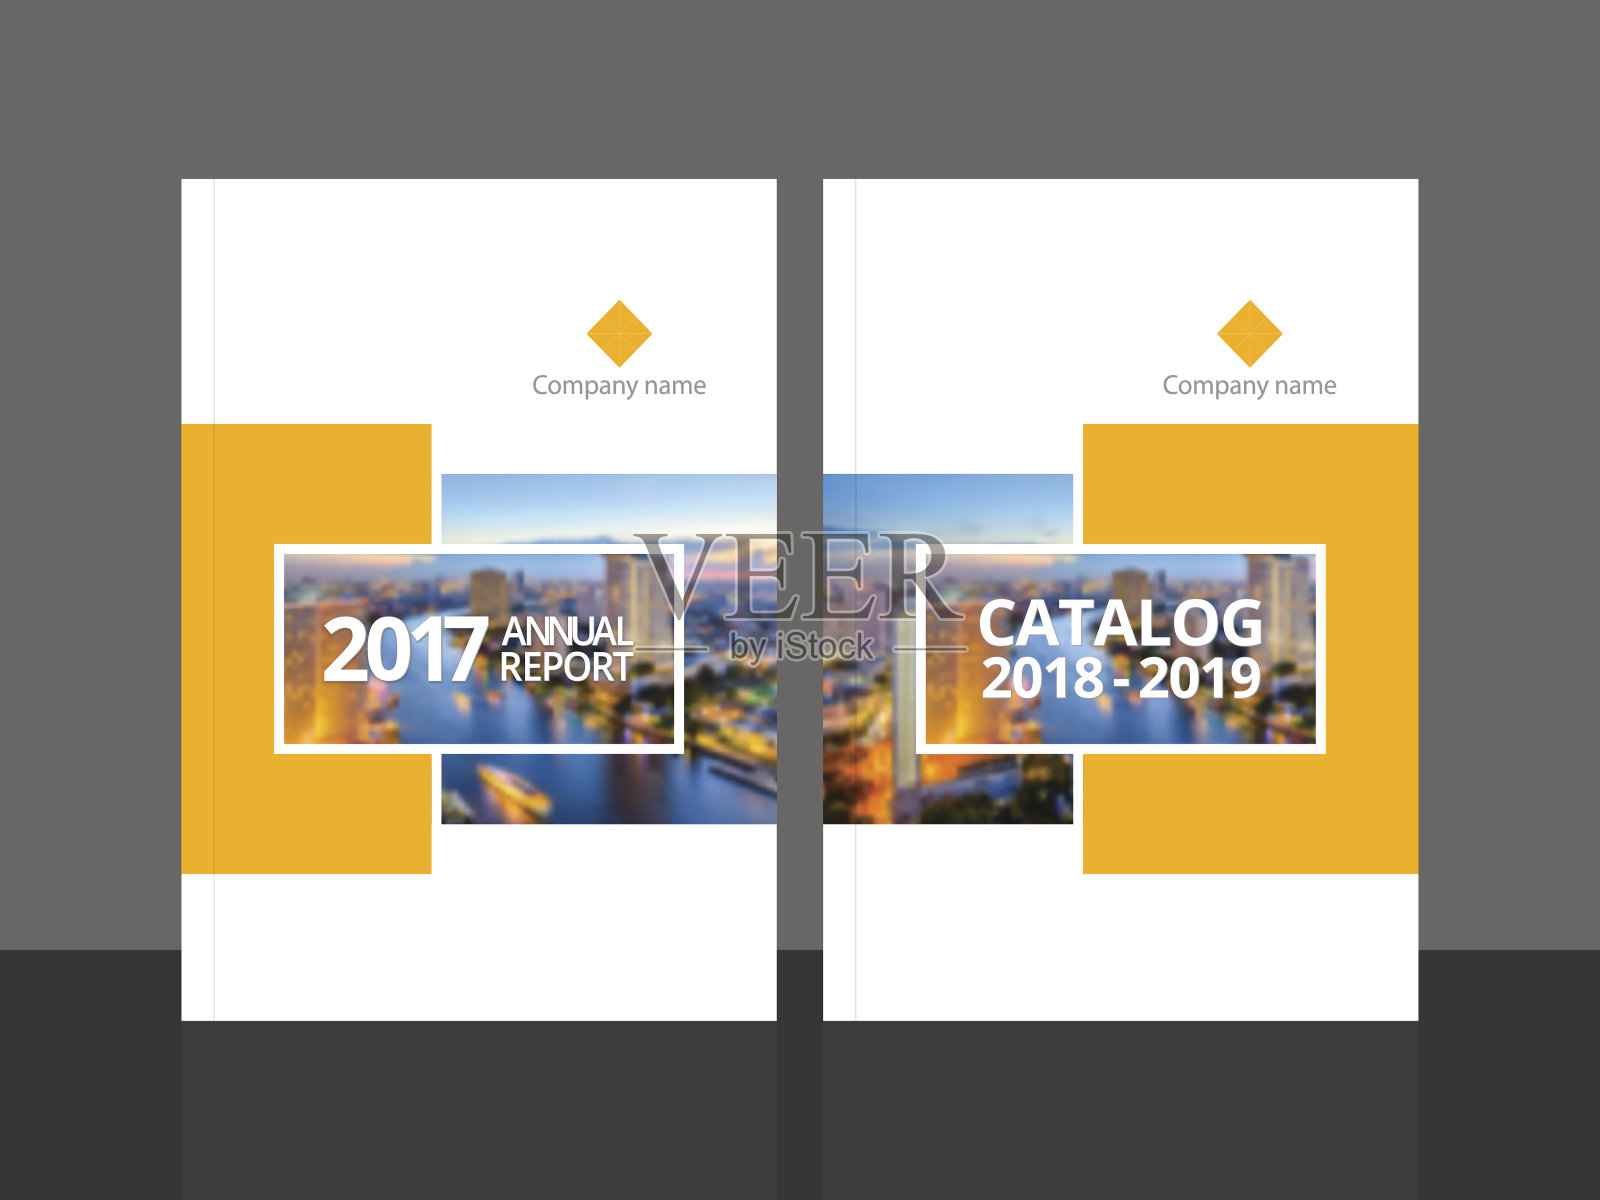 年度报告和业务目录的封面设计设计模板素材